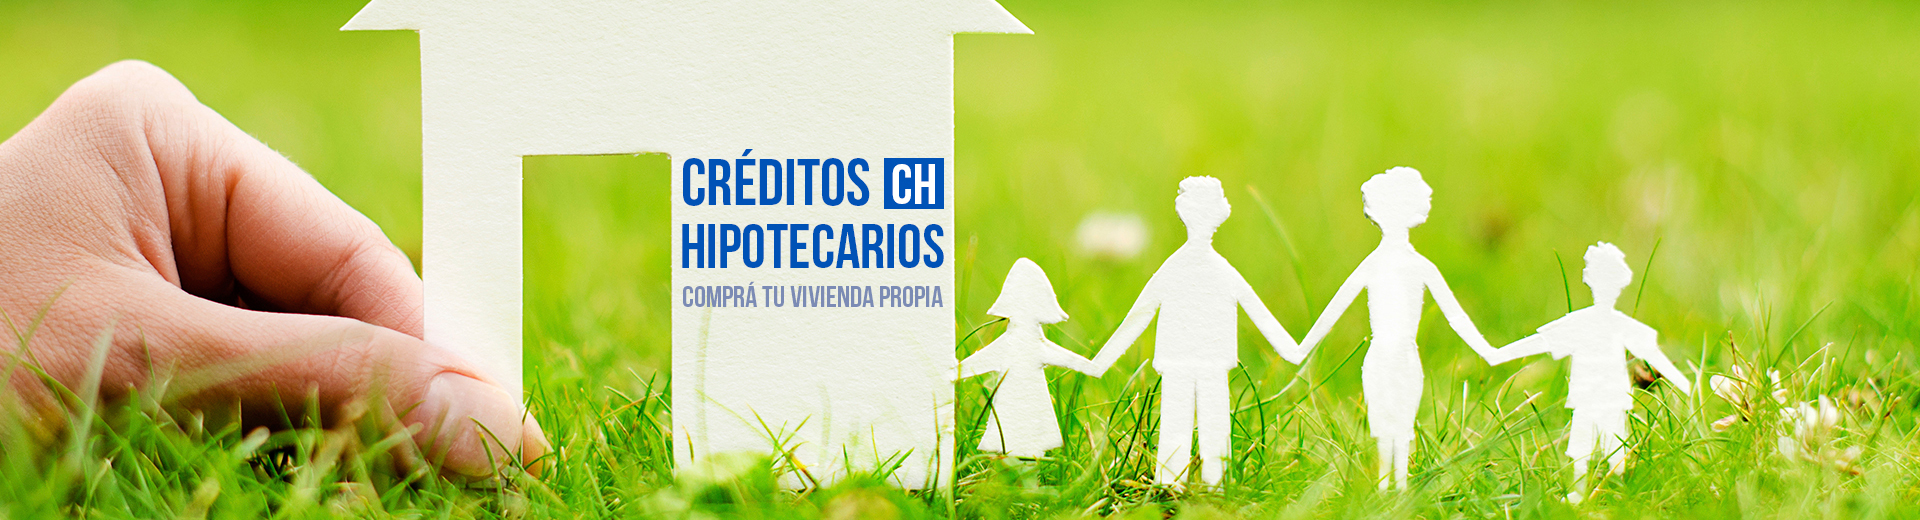 Créditos Hipotecarios - Préstamos hipotecarios